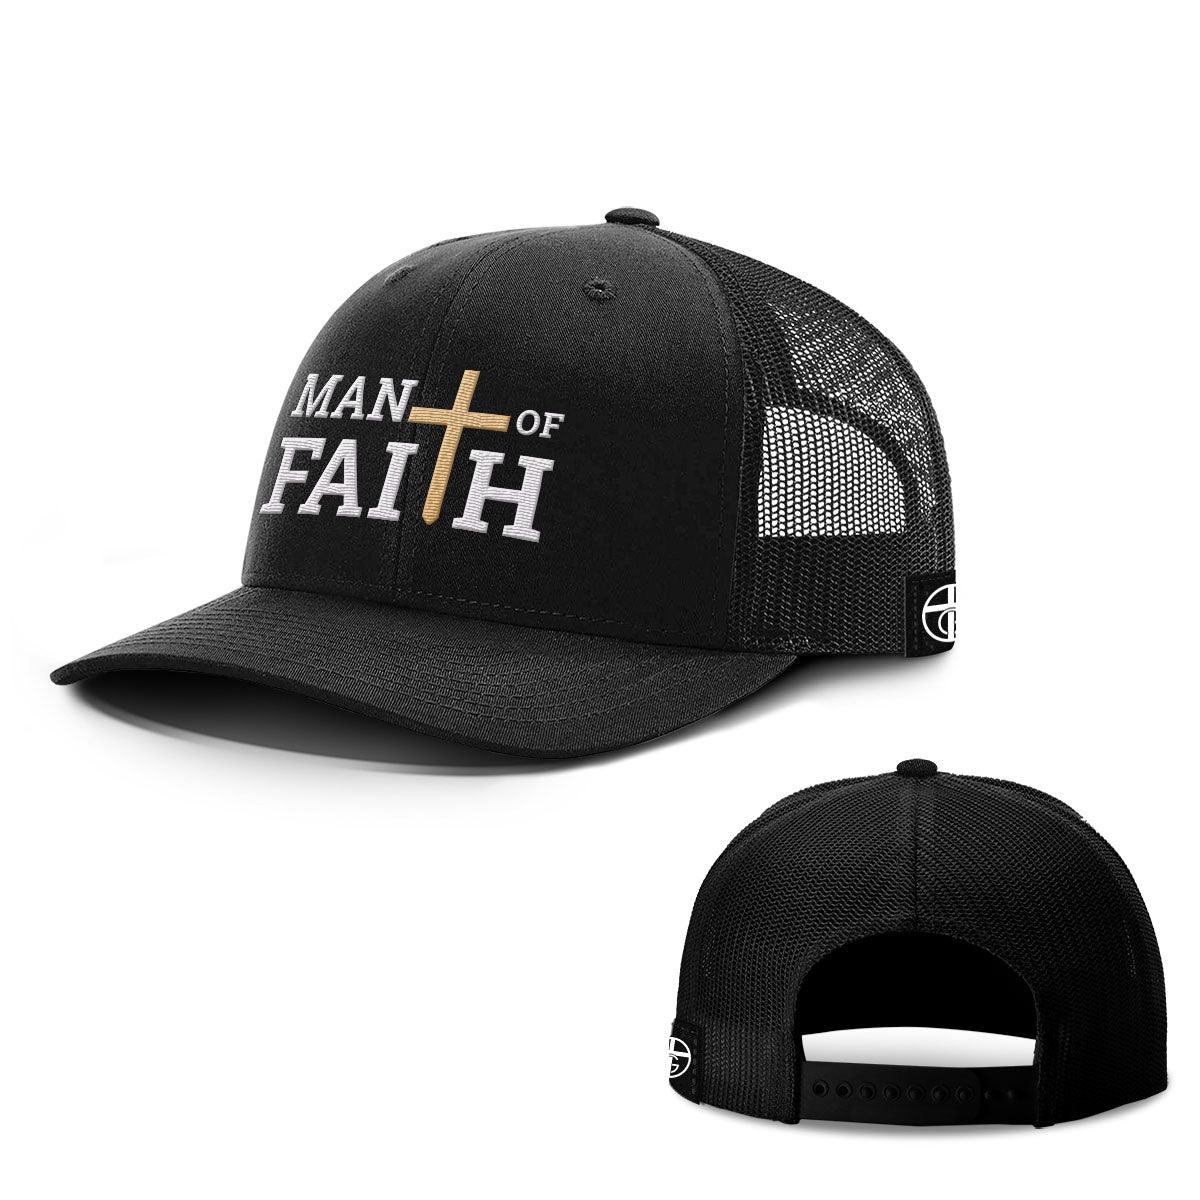 Man Of Faith Hats